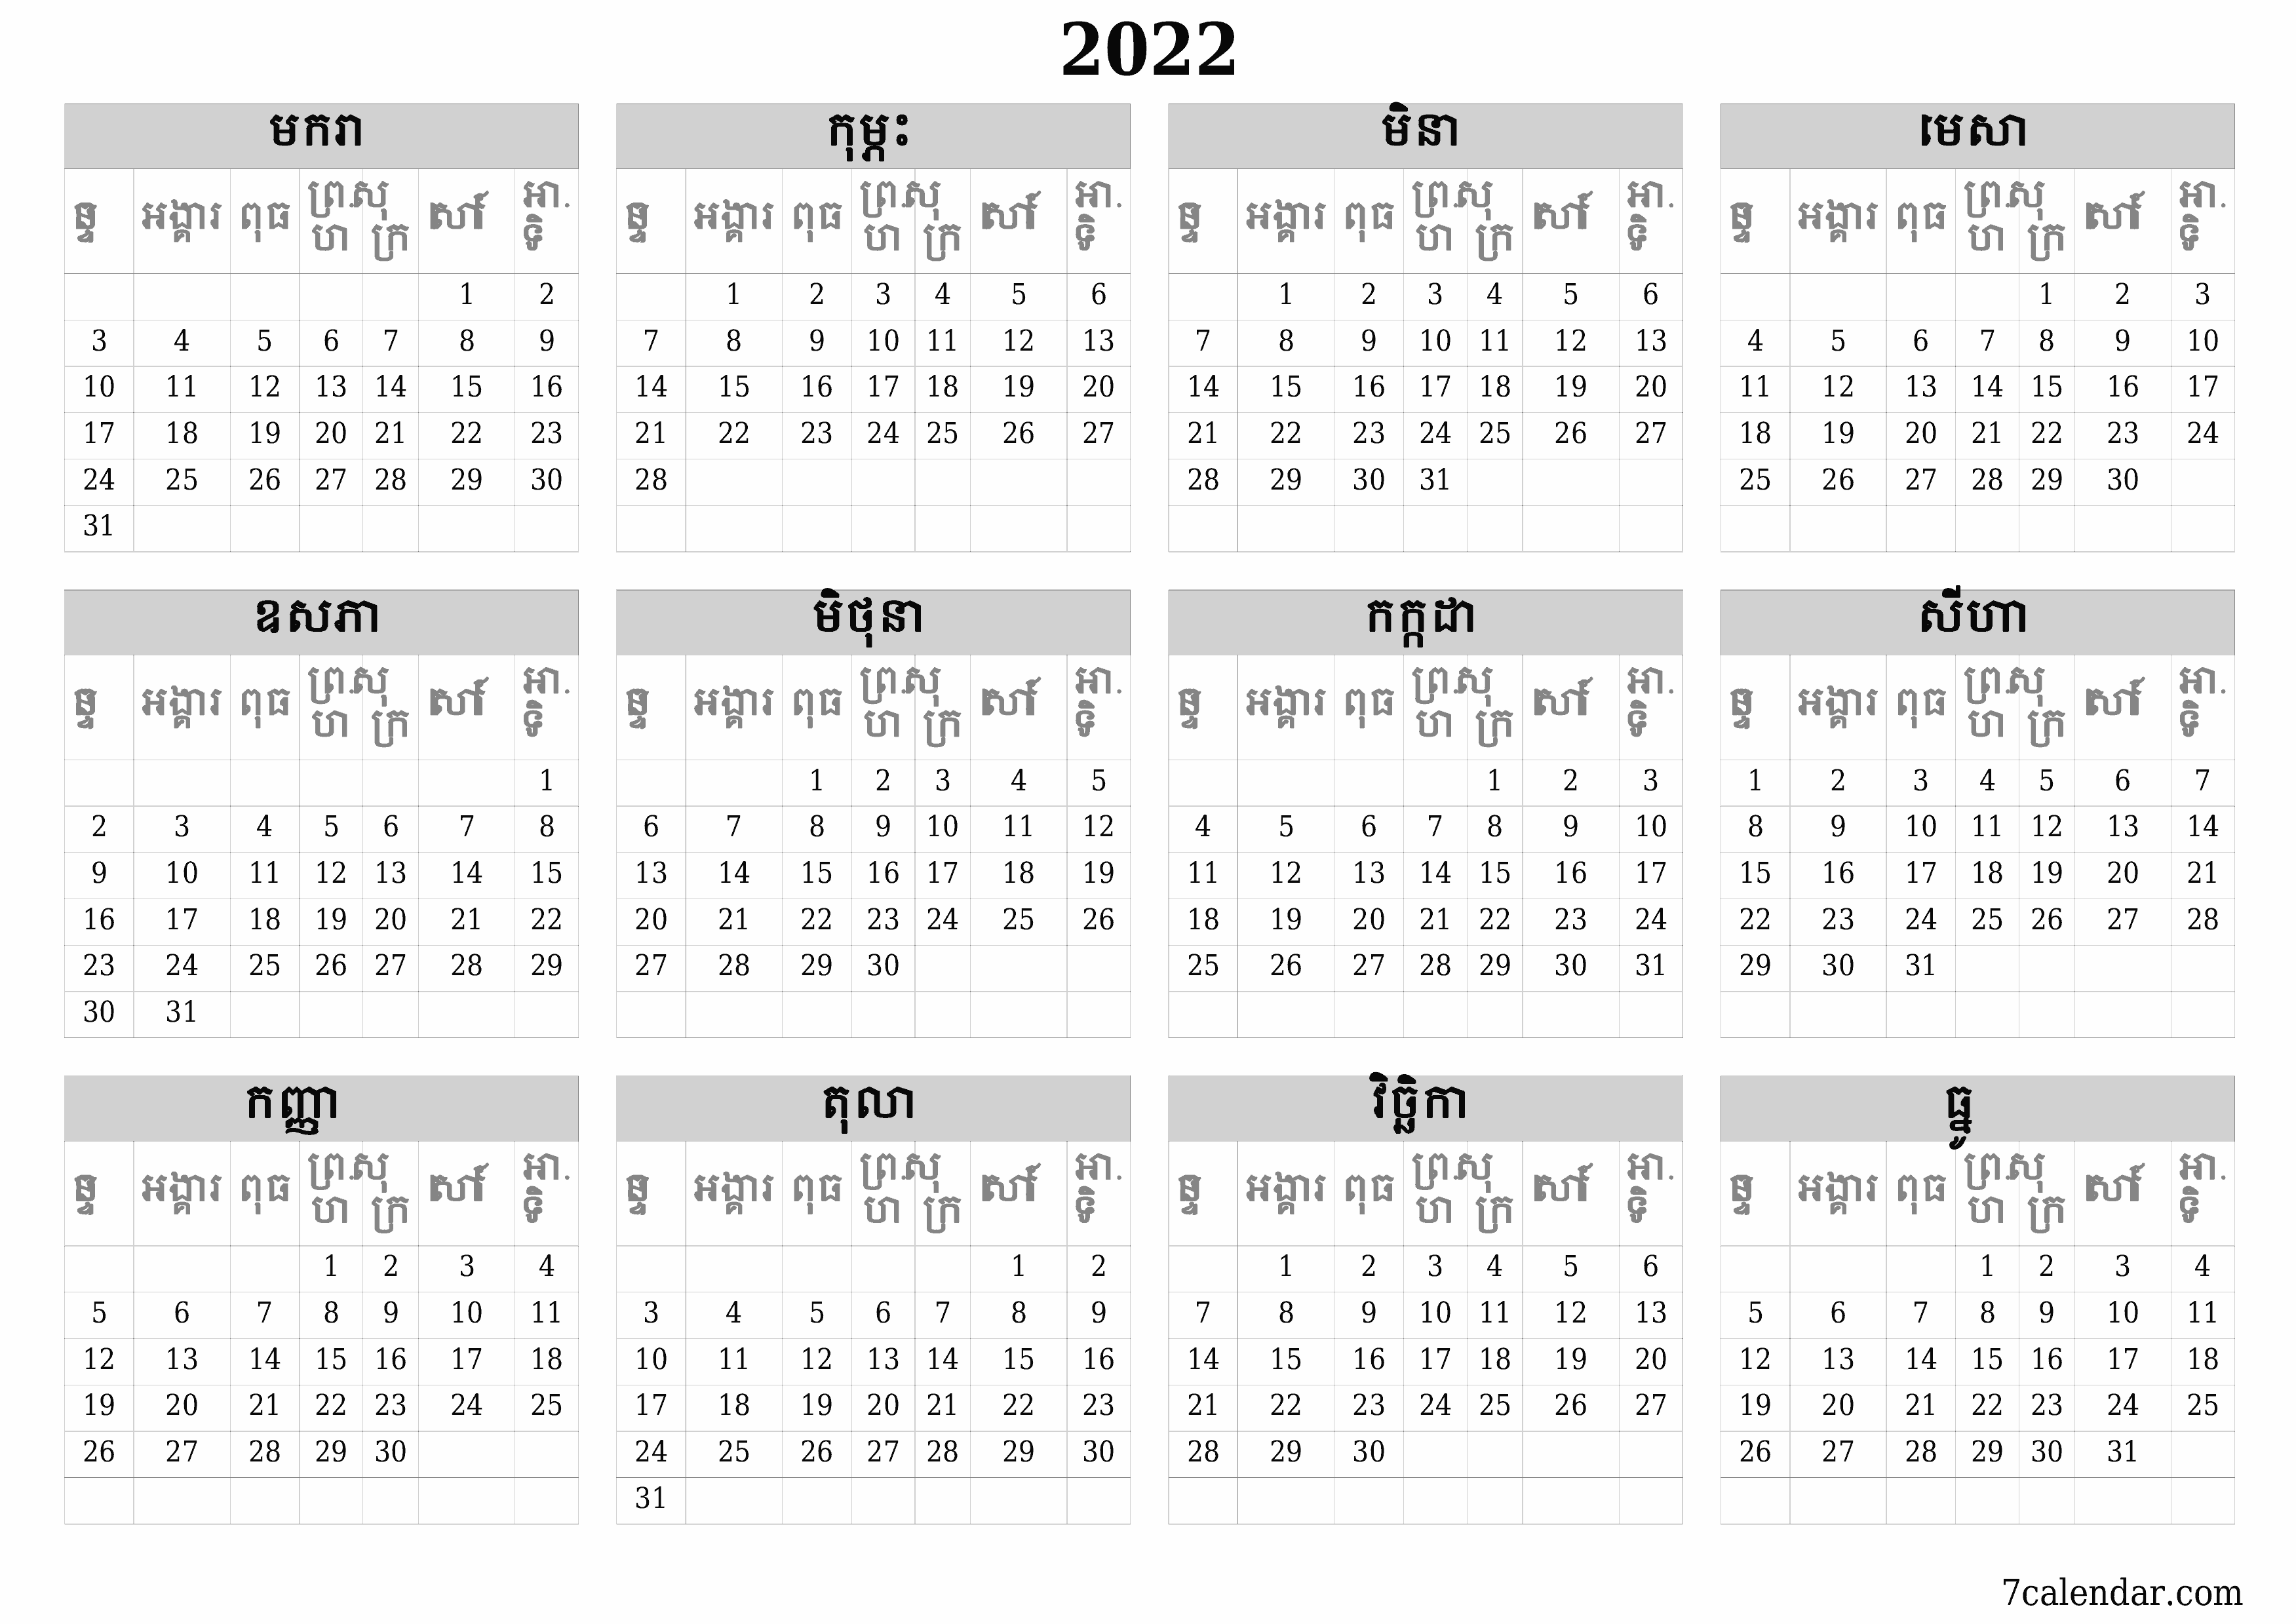 គំរូរូបភាពប្រតិទិន HD ប្រចាំខែទទេប្រចាំឆ្នាំសម្រាប់ឆ្នាំ 2022 រក្សាទុកនិងបោះពុម្ពជា PDF PNG Khmer - 7calendar.com